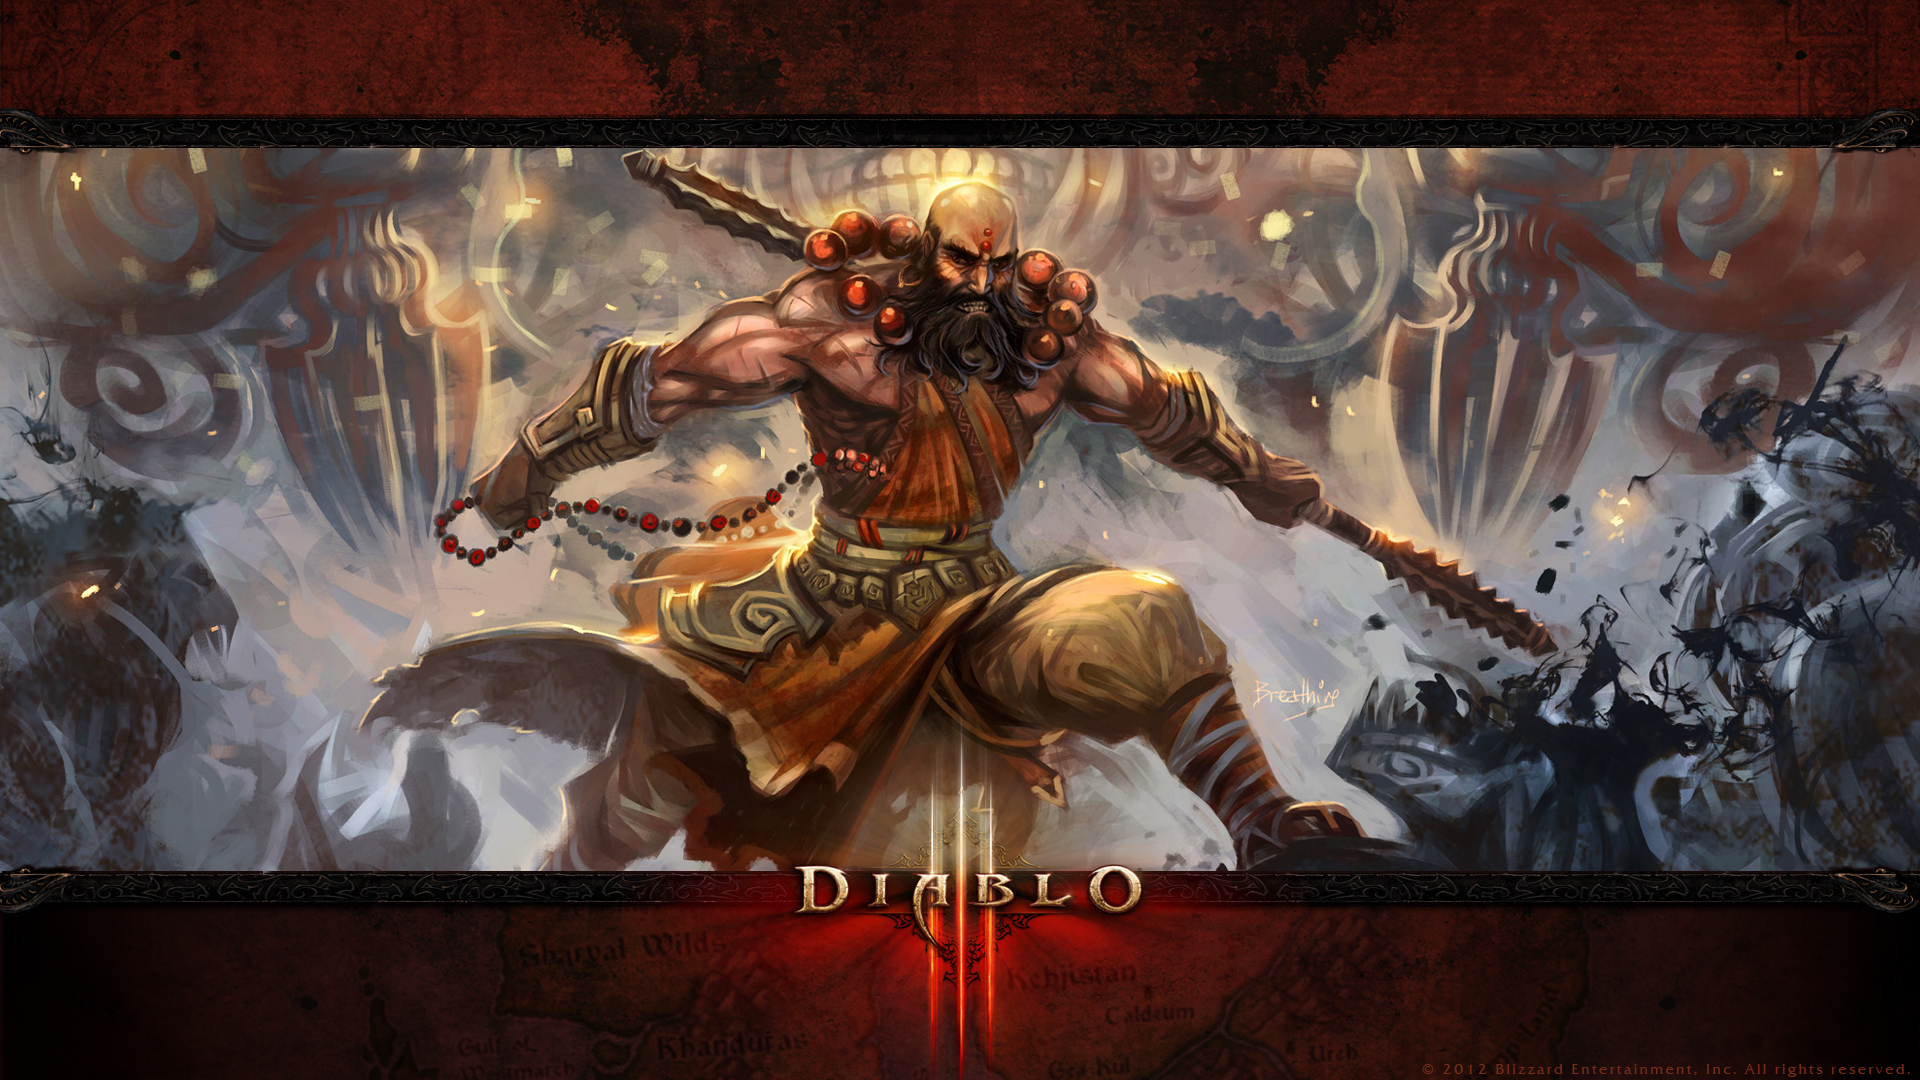 Immagine pubblicata in relazione al seguente contenuto: Blizzard apre a tutti la beta di Diablo III per questo week end | Nome immagine: news17071_1.jpg